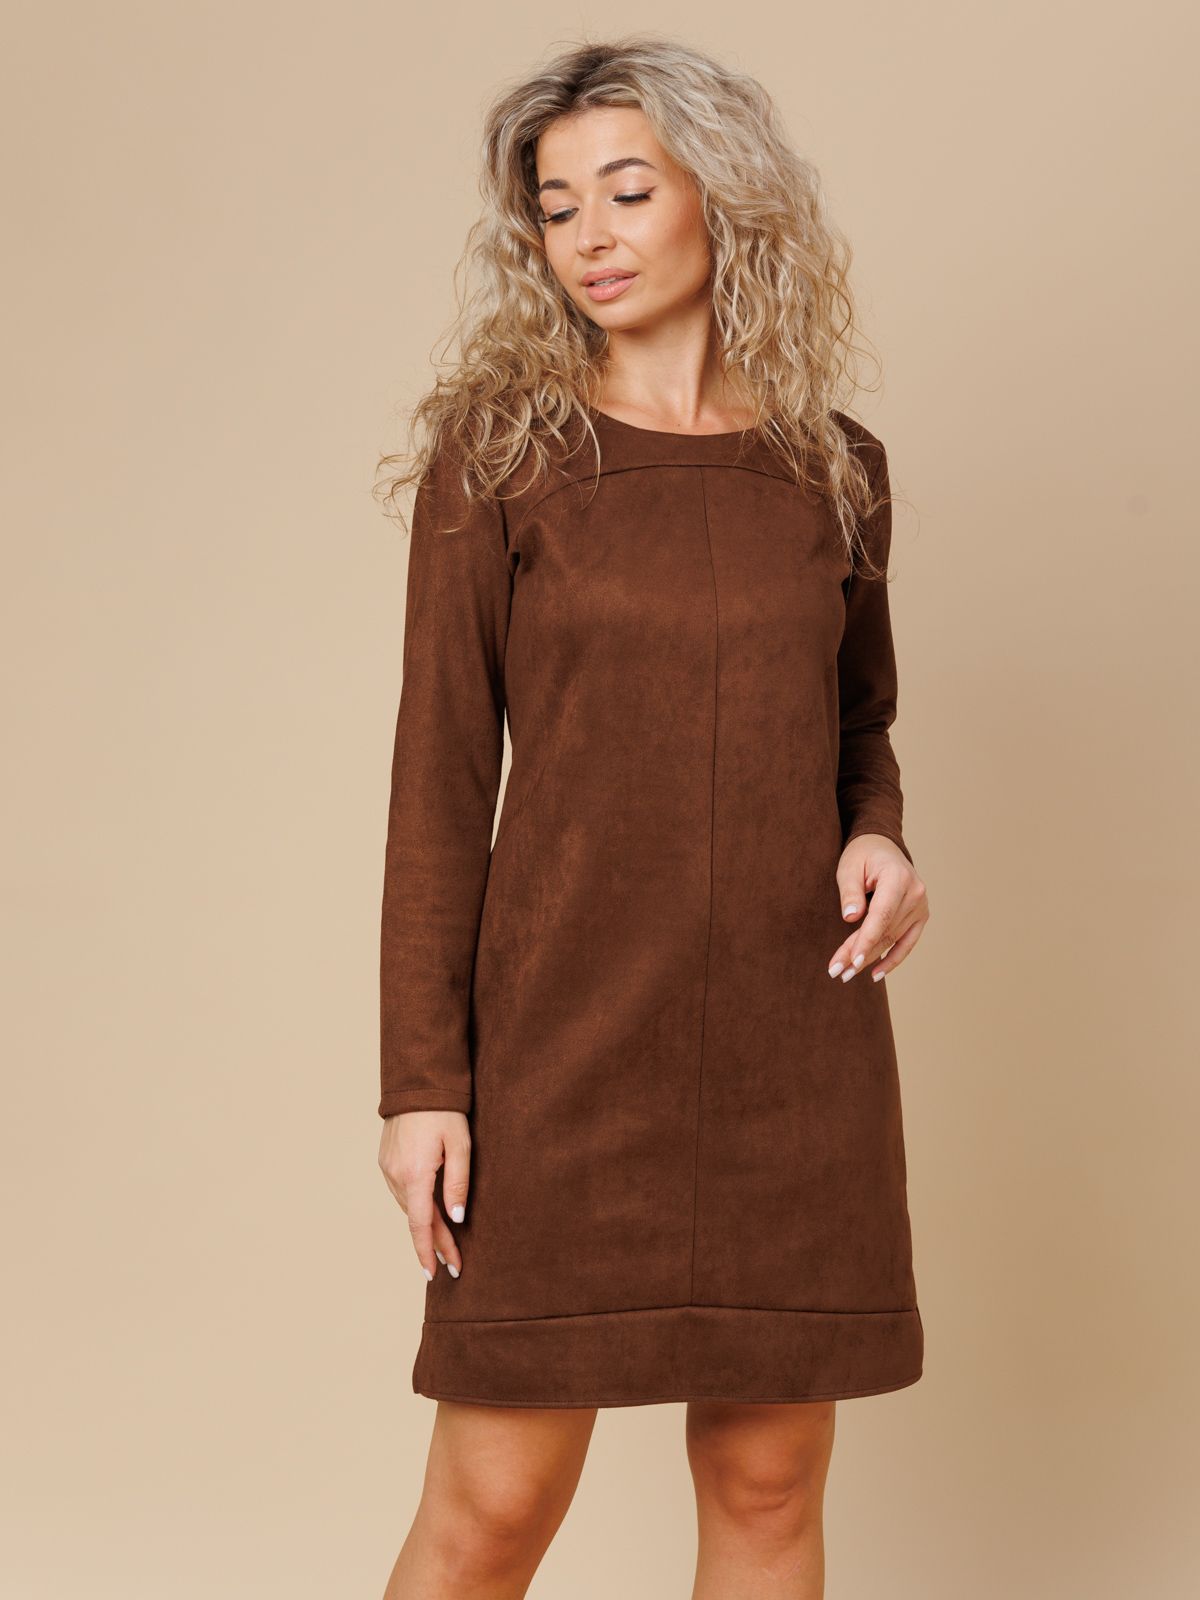 Платье женское TOPLES 23063 коричневое 46 RU